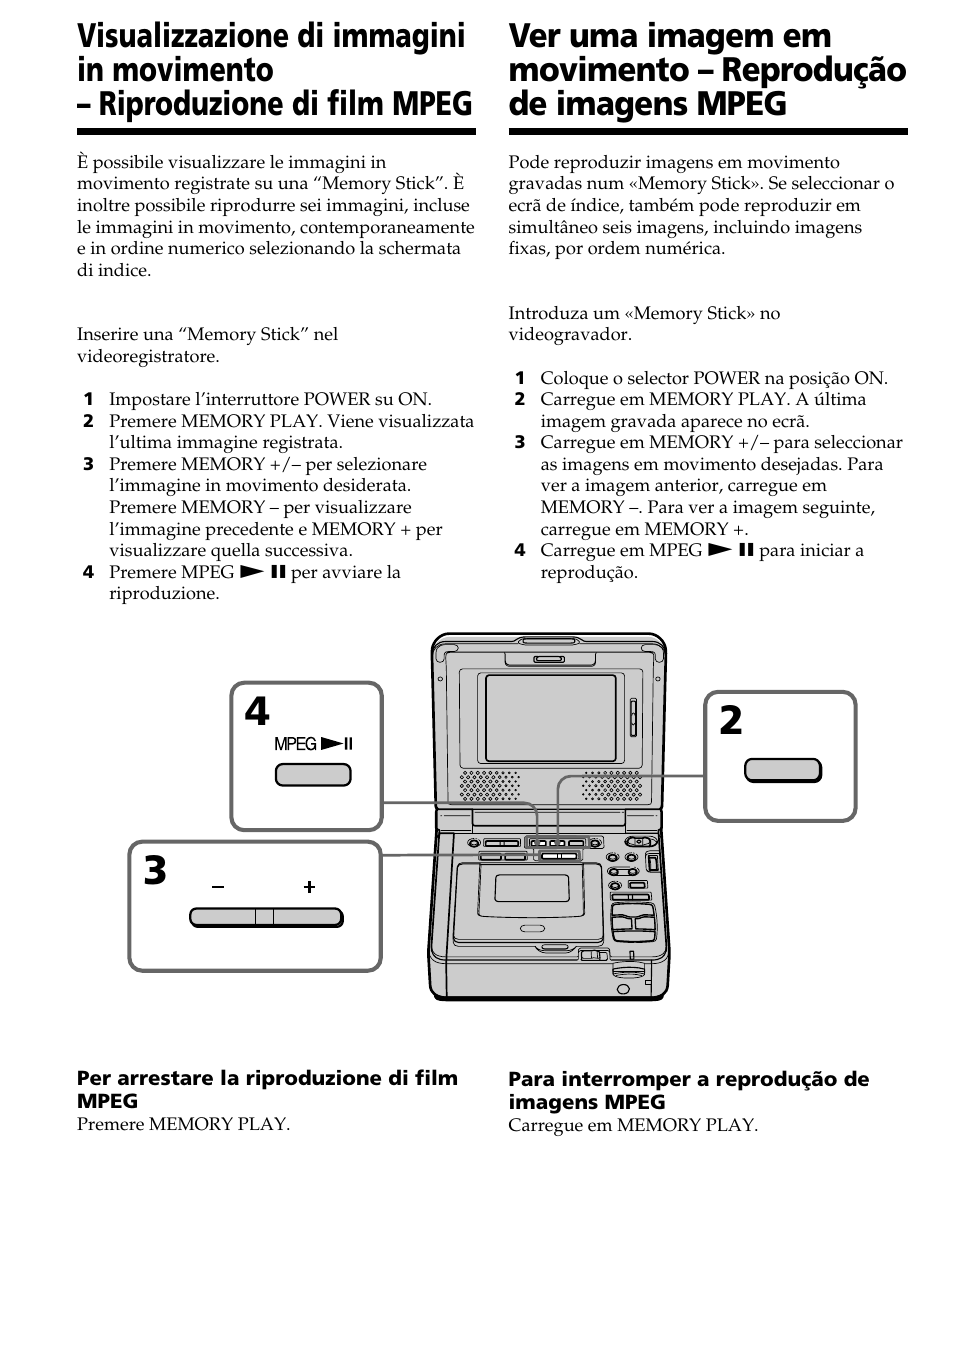 Sony GV-D1000 Manuale d'uso | Pagina 146 / 220